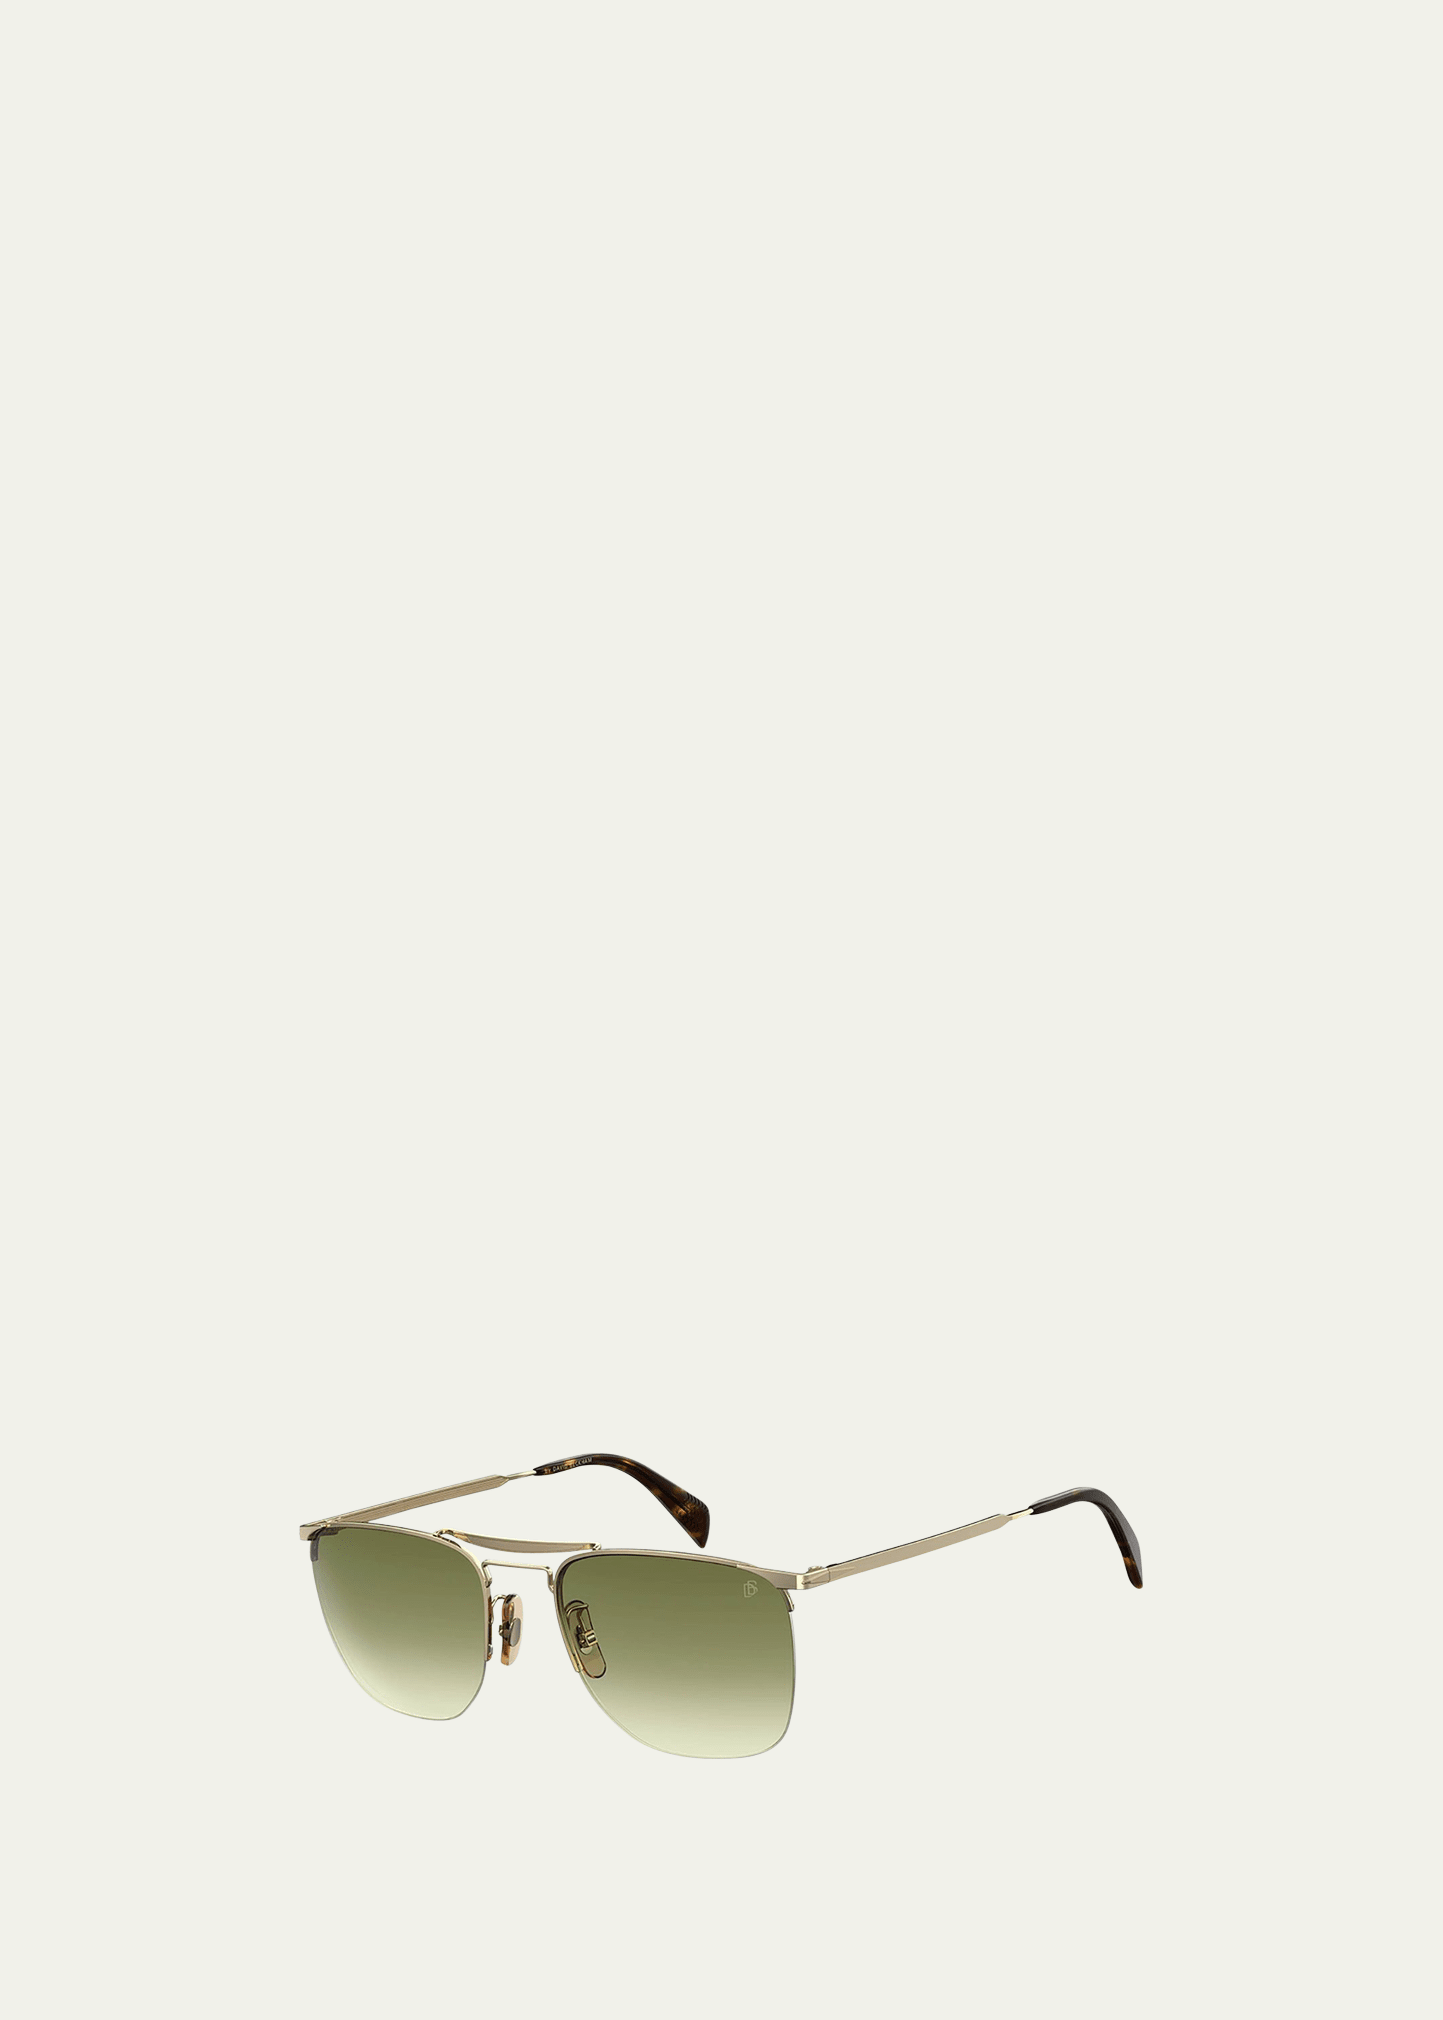 David Beckham Men's Half-Rim Metal Gradient Square Sunglasses